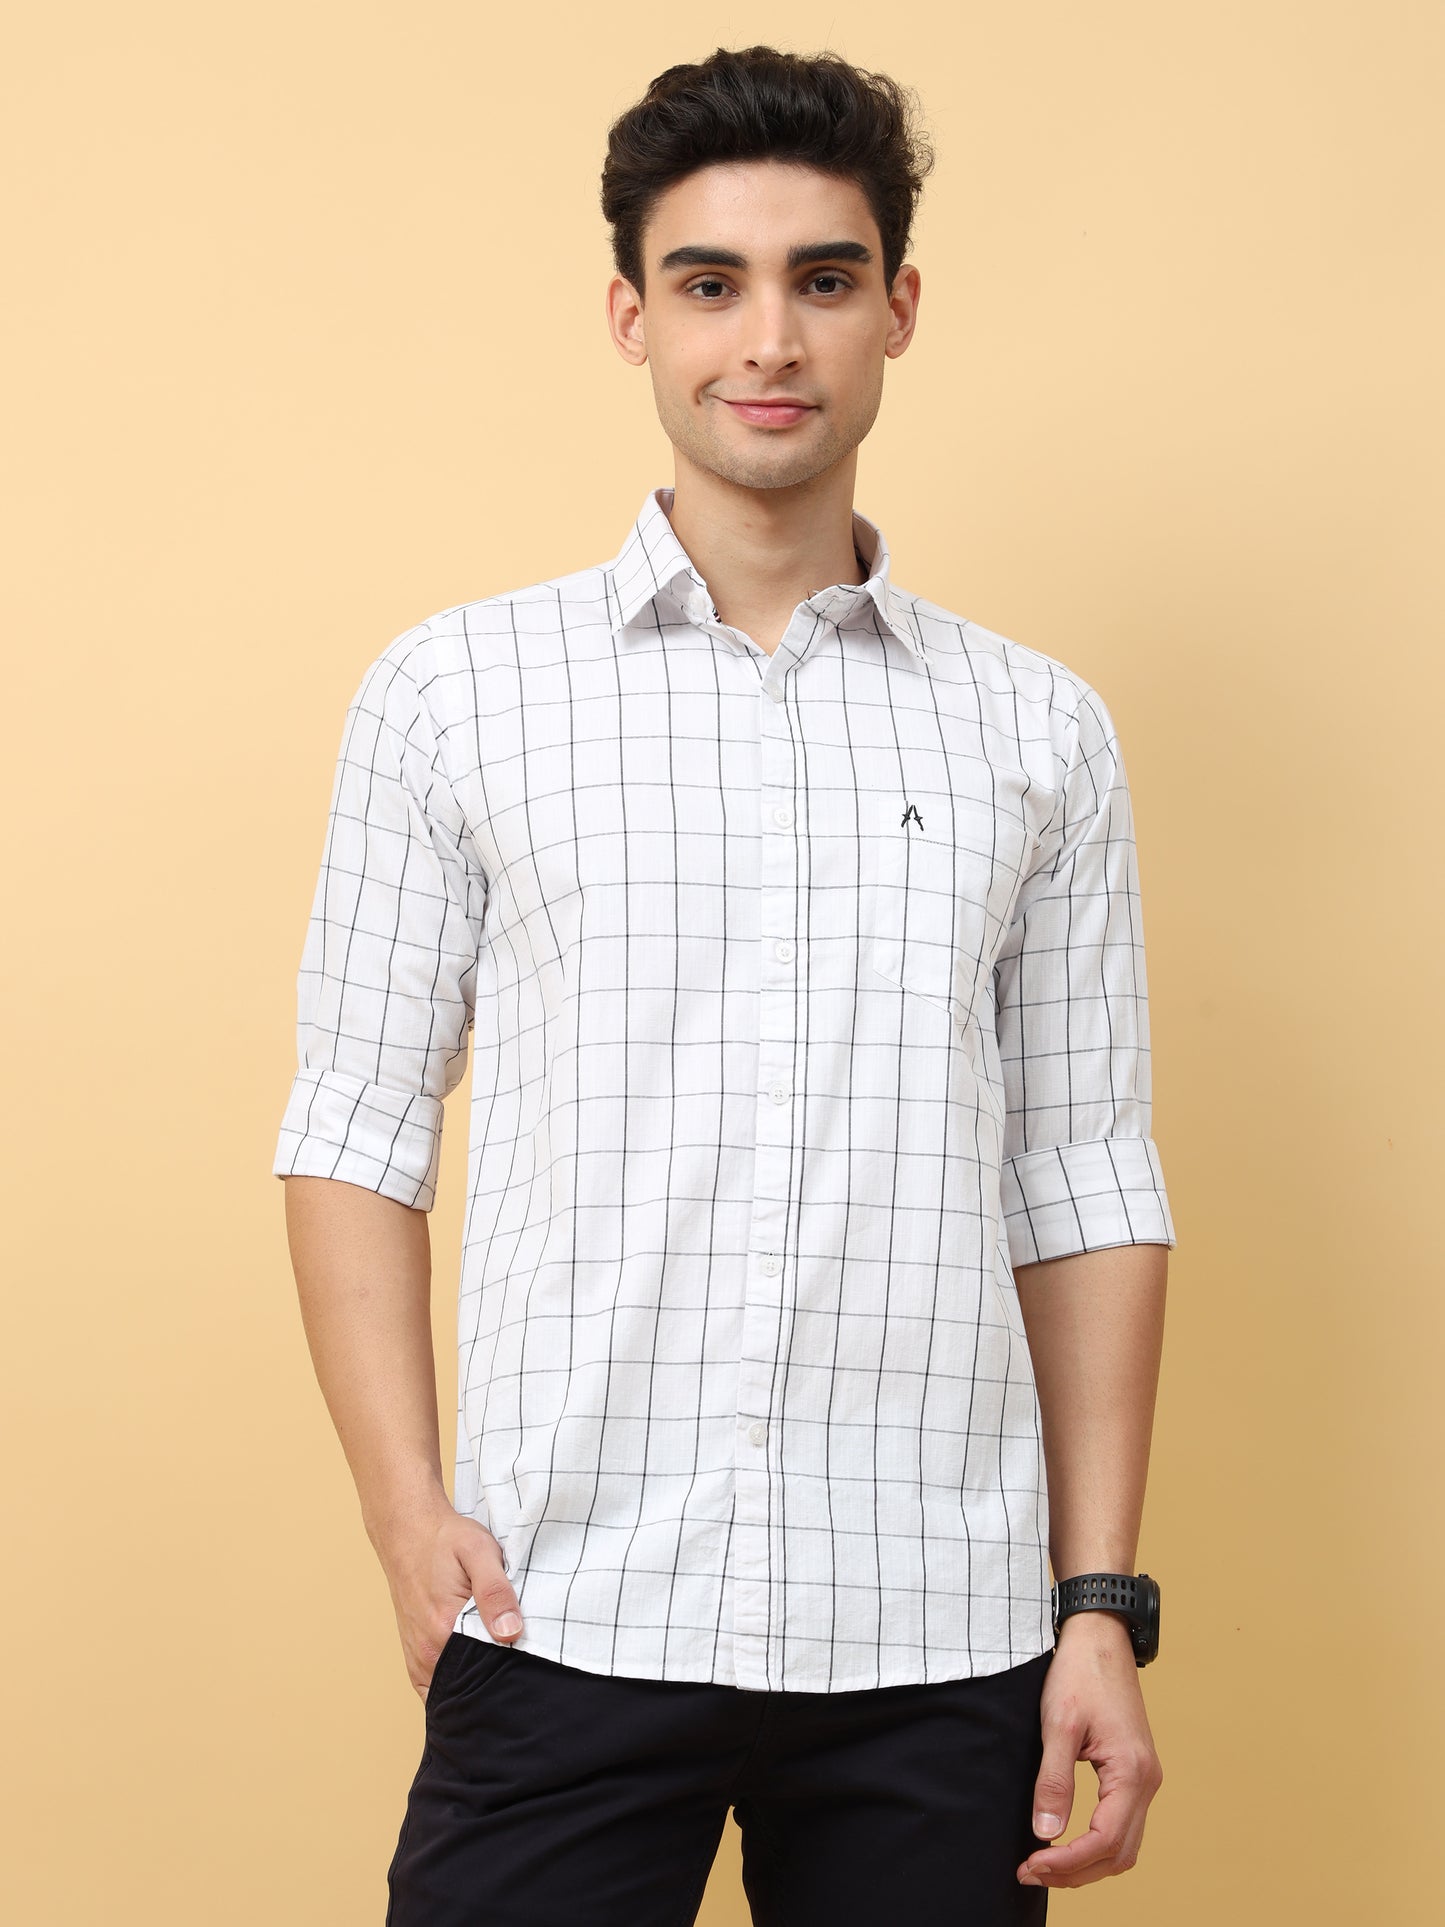 white and black Checks premium Cotton shirt for men